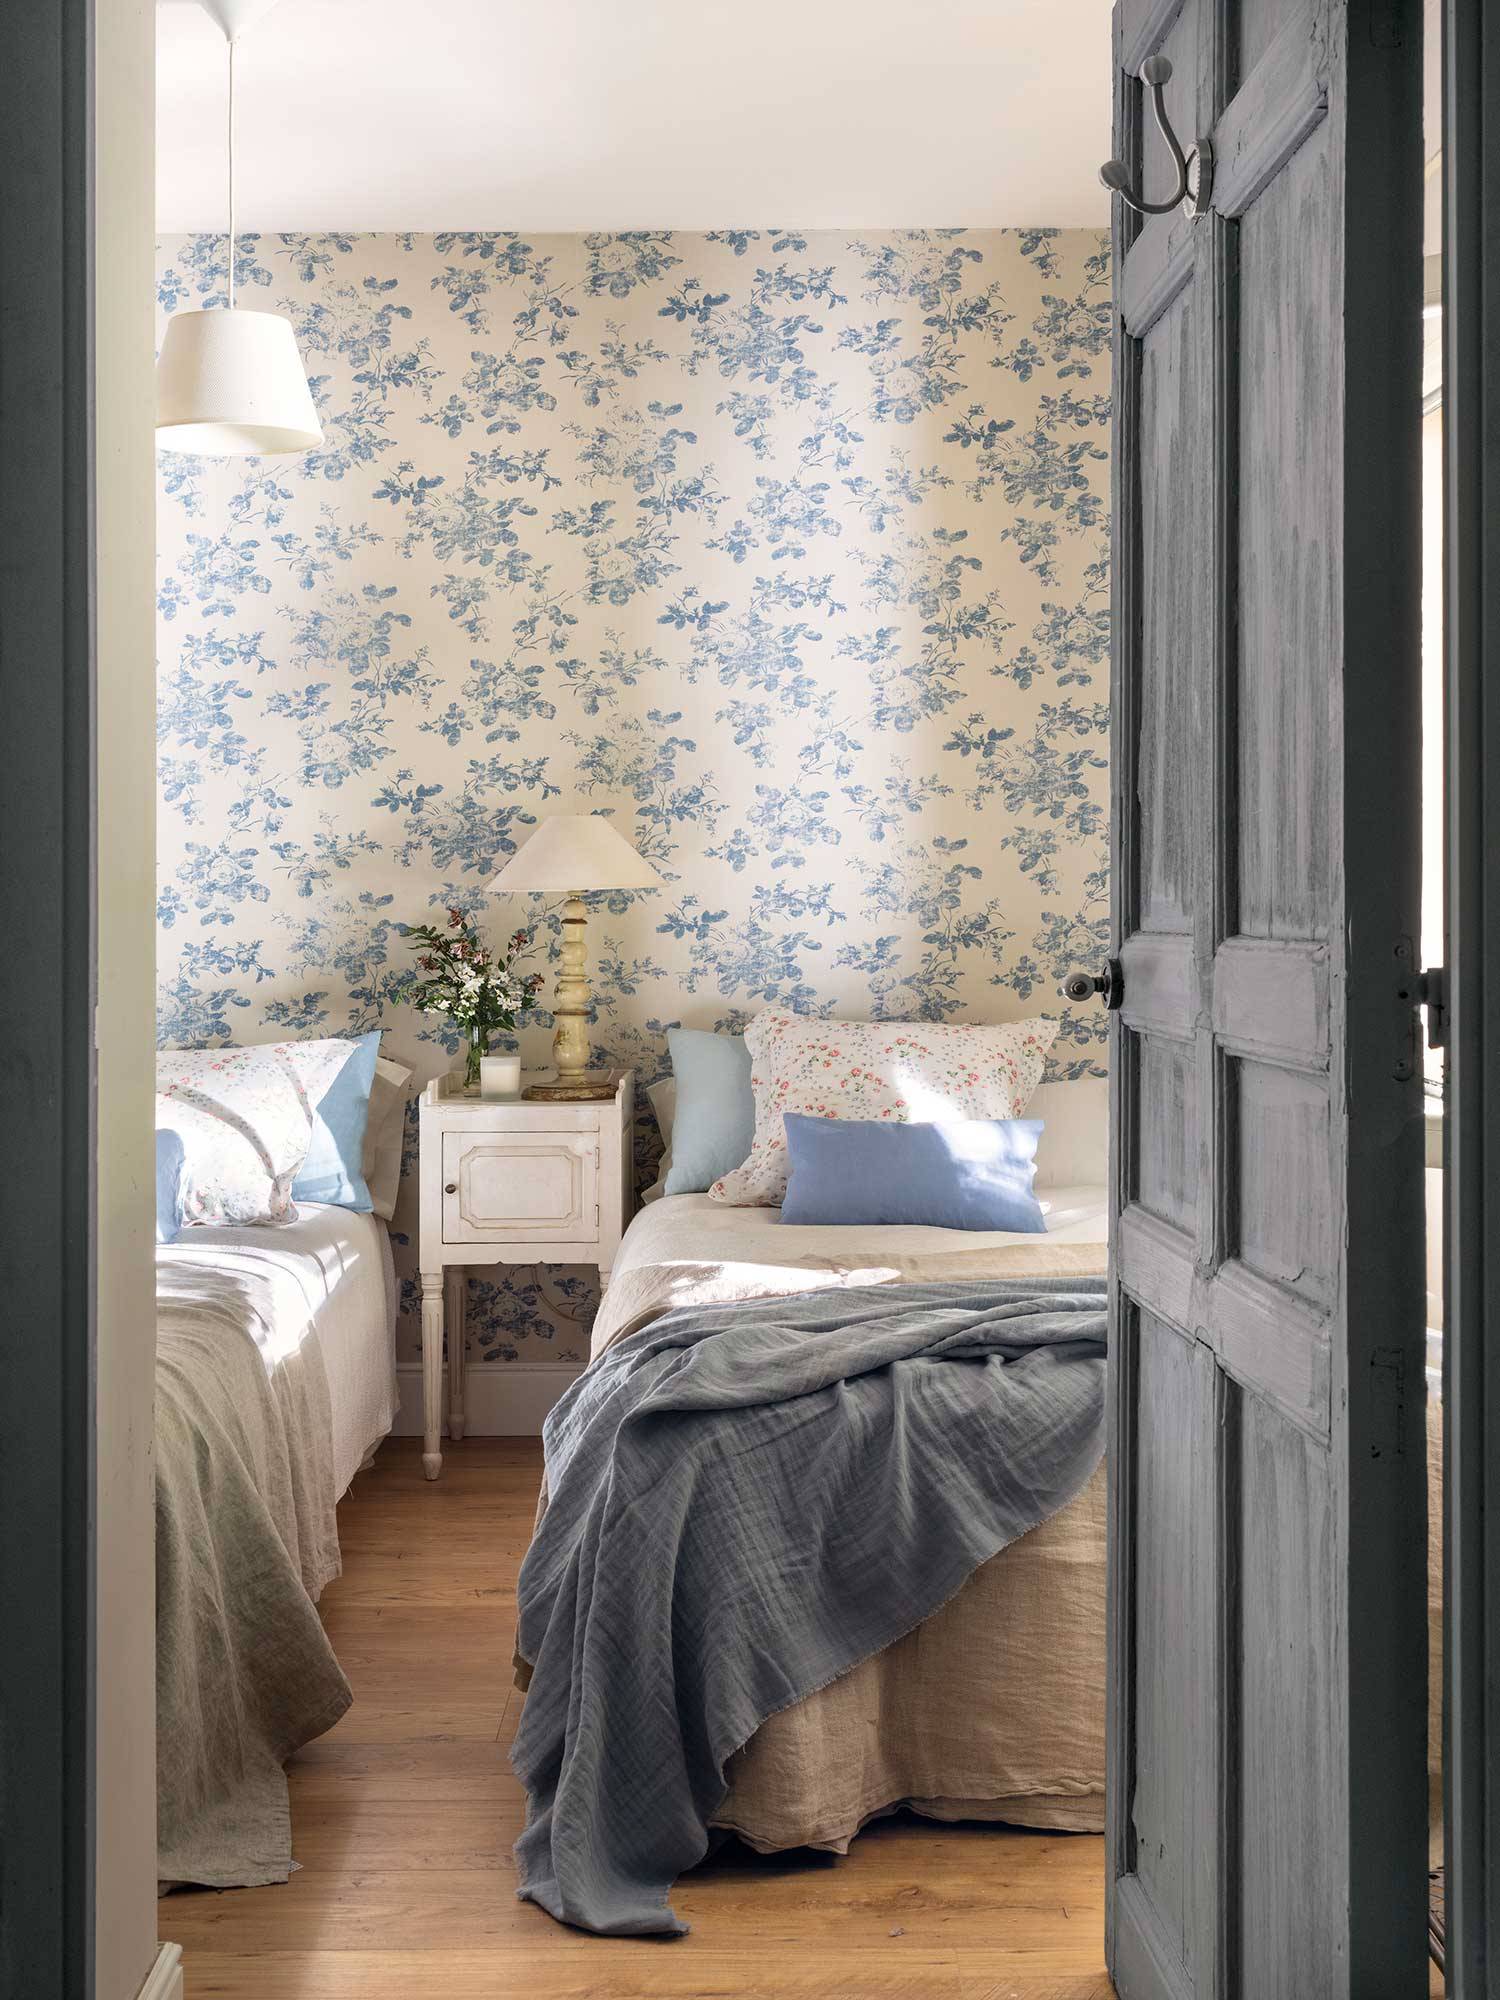 Dormitorio infantil con papel pintado blanco y azul.